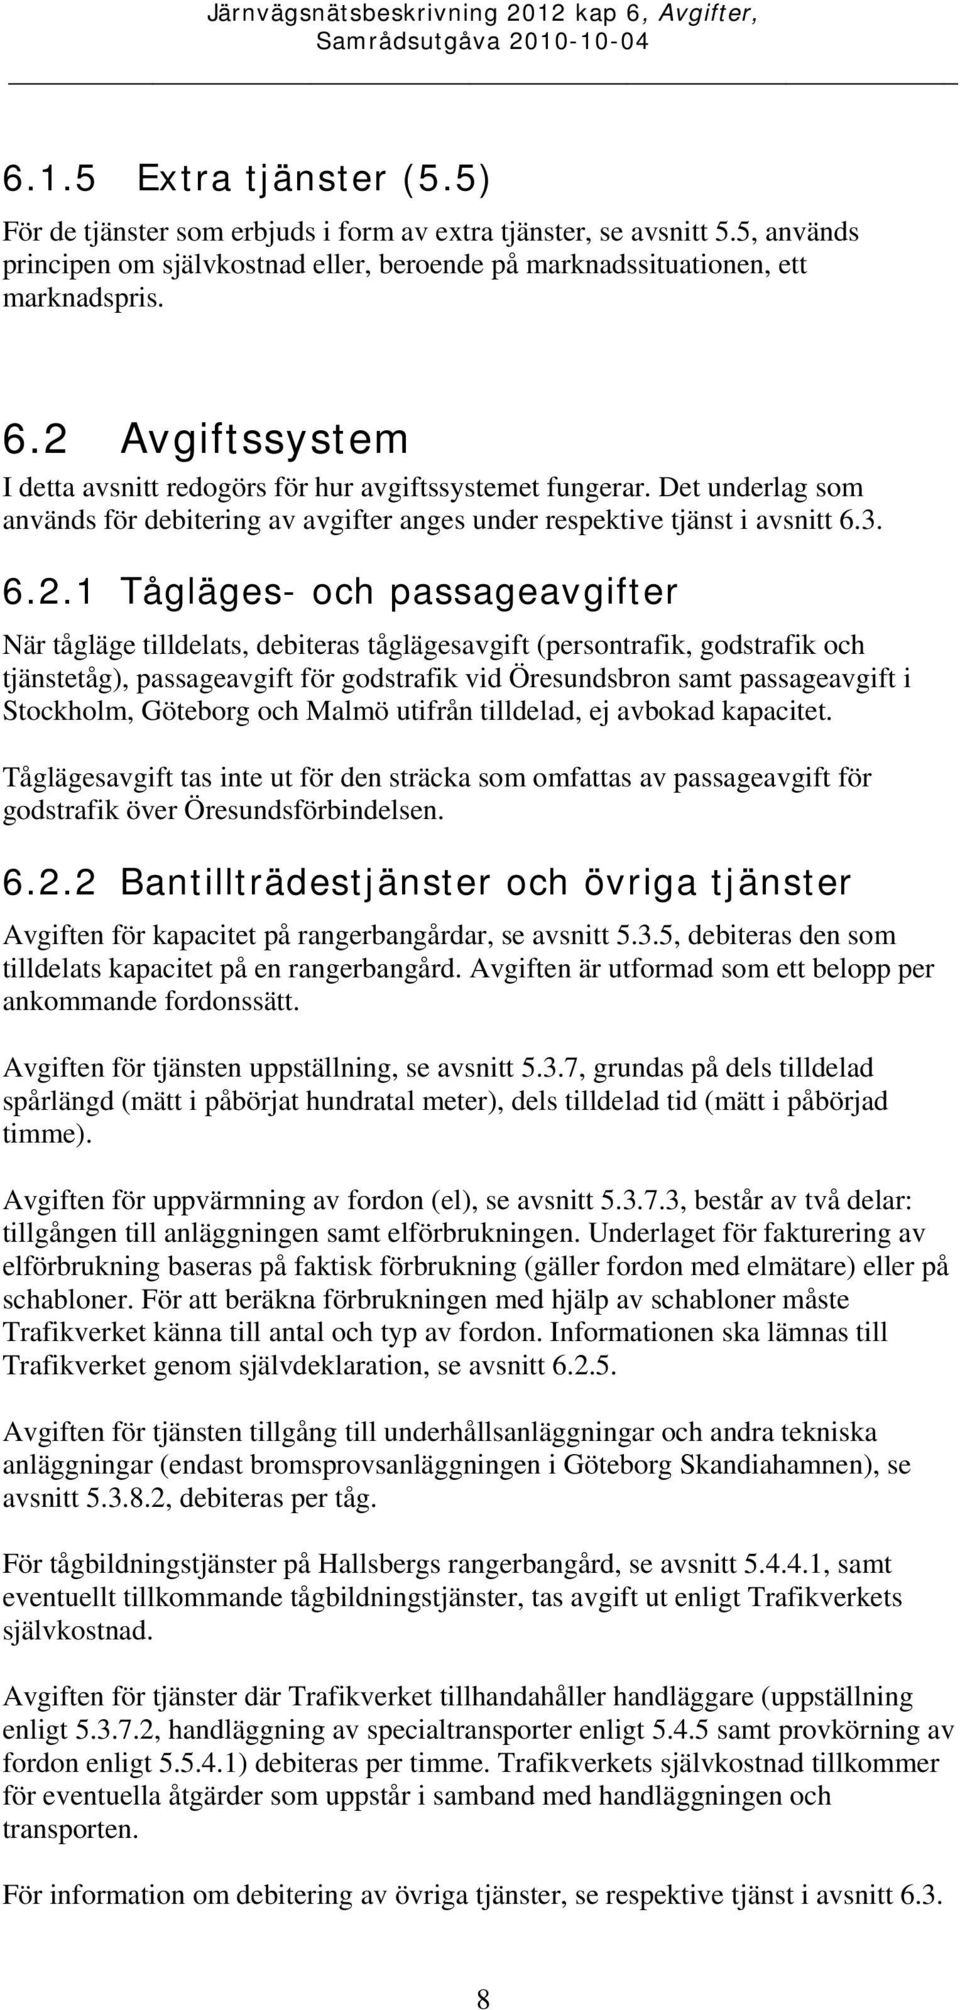 passageavgifter När tågläge tilldelats, debiteras tåglägesavgift (persontrafik, godstrafik och tjänstetåg), passageavgift för godstrafik vid Öresundsbron samt passageavgift i Stockholm, Göteborg och